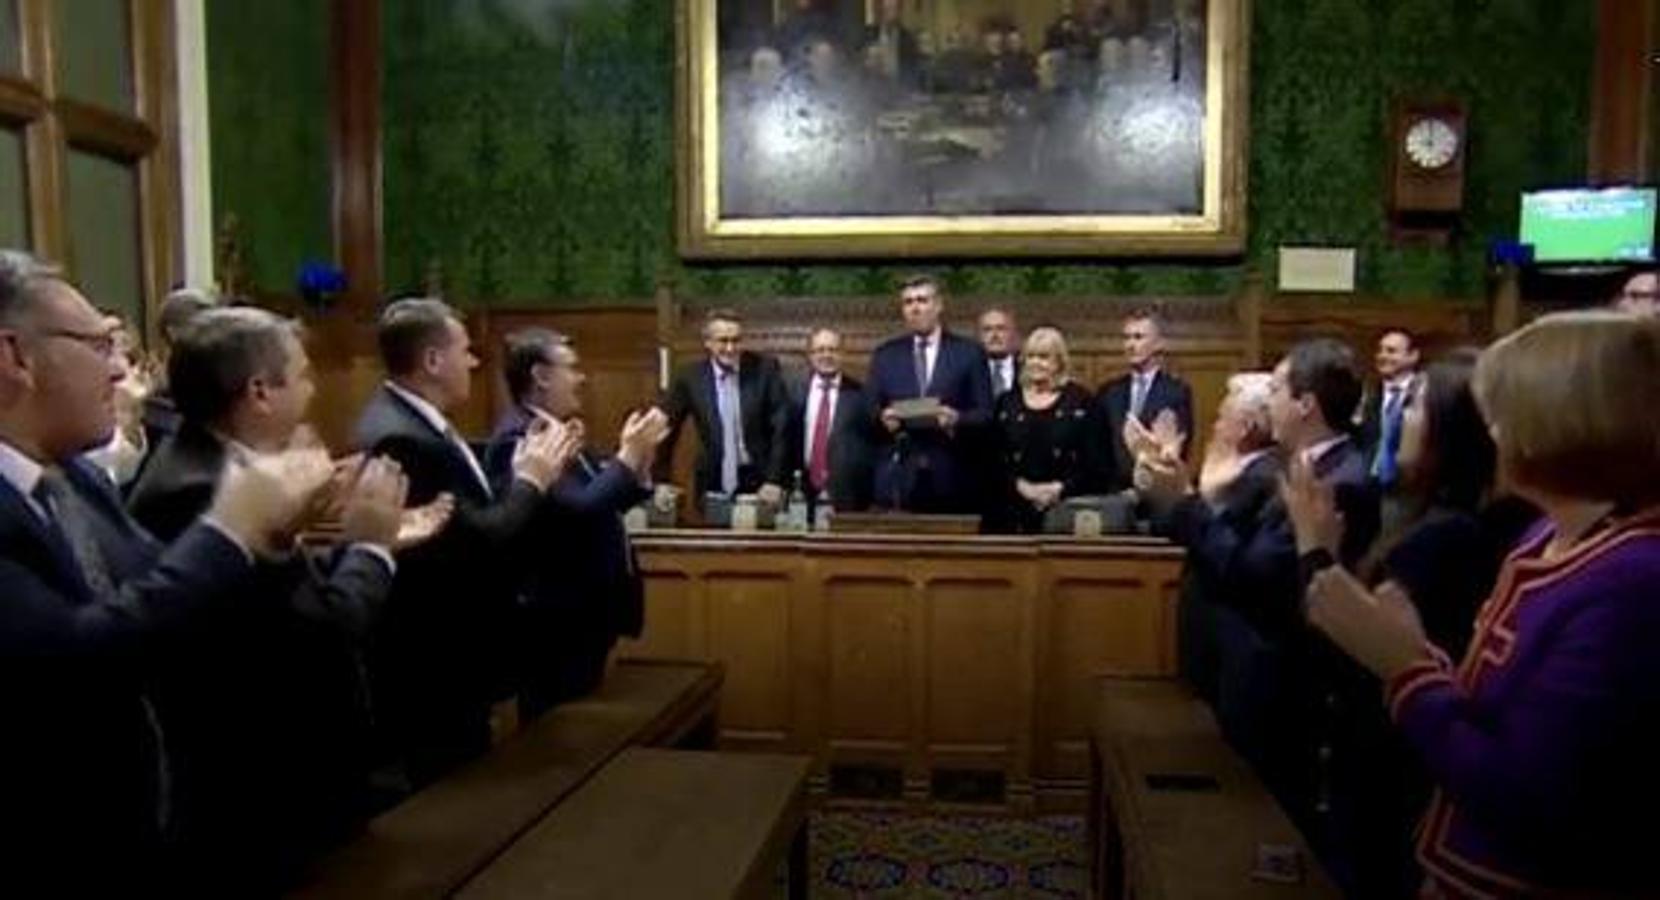 Momento de la lectura tras la votación secreta para la moción de confianza de Theresa May, que obtuvo200 votos a favor y 117 en contra. 